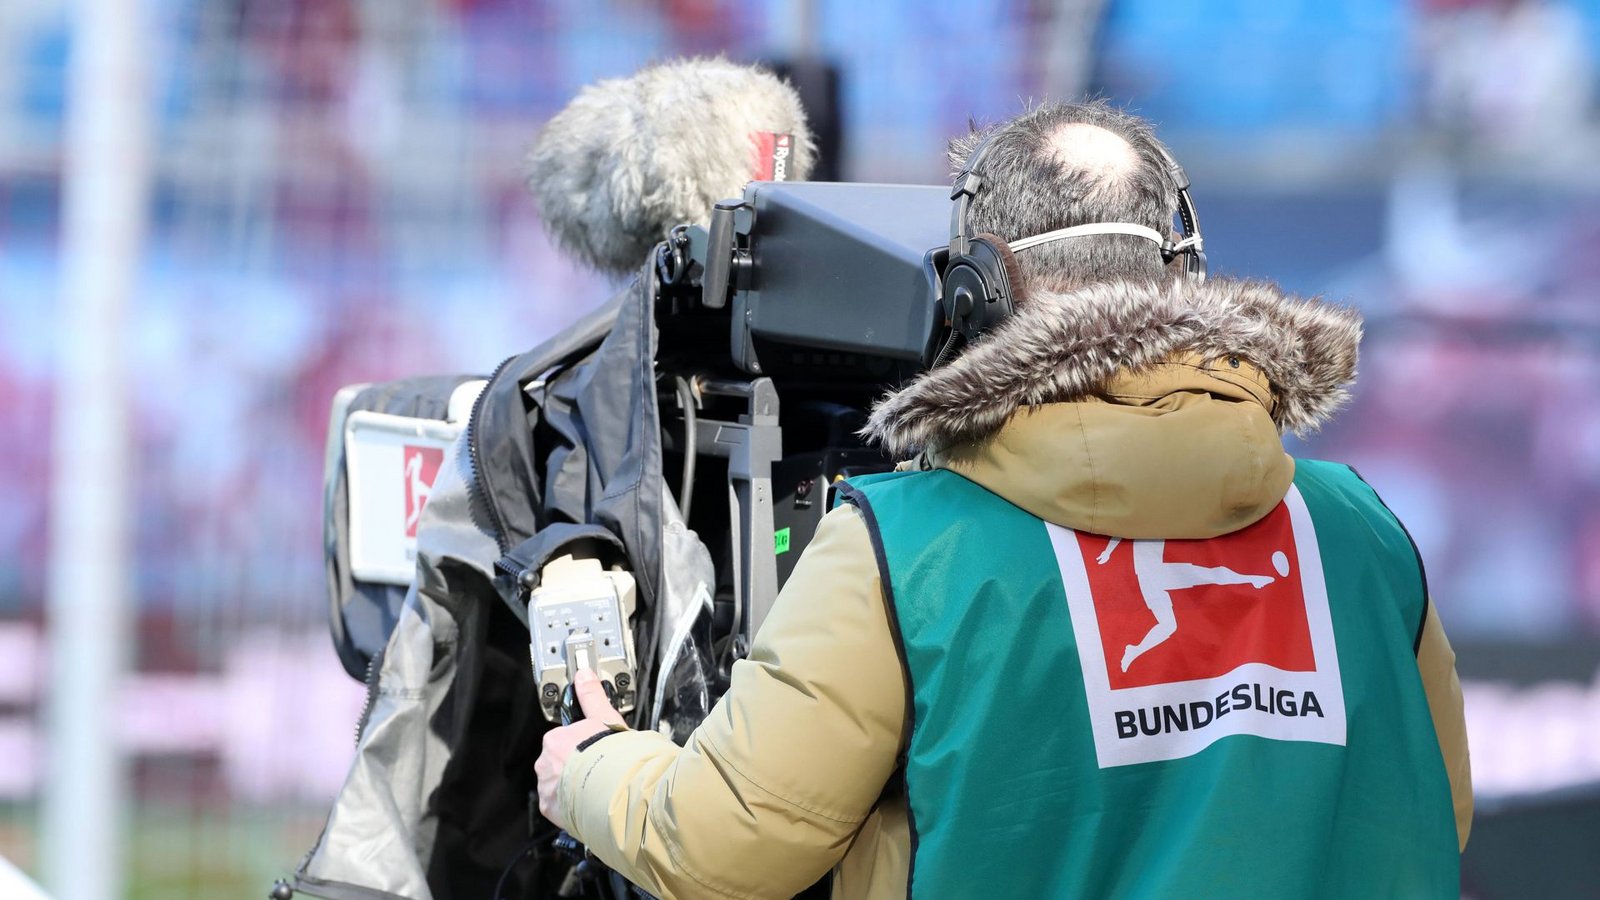 Die DFL hat allen Bewerbern für die 1. und 2. Bundesliga die Lizenz erteilt. (Symbolbild)Foto: IMAGO/Picture Point LE/IMAGO/Sven Sonntag